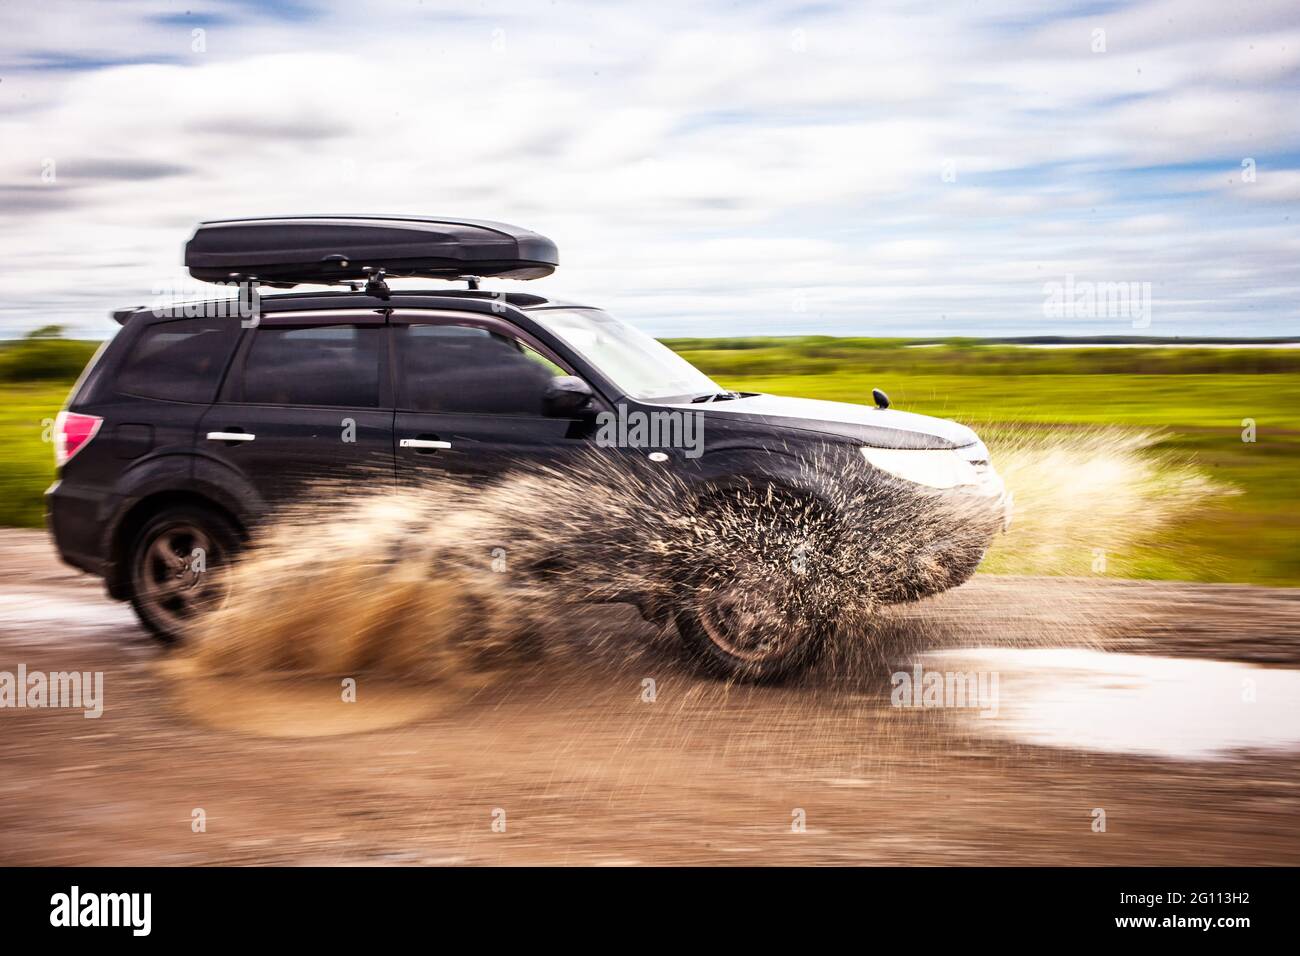 Schwarzer Subaru Forester fährt auf einer unbefestigten Straße mit Pfützen. Wasser spritzt unter den Rädern. Bewegungsunschärfe Stockfoto